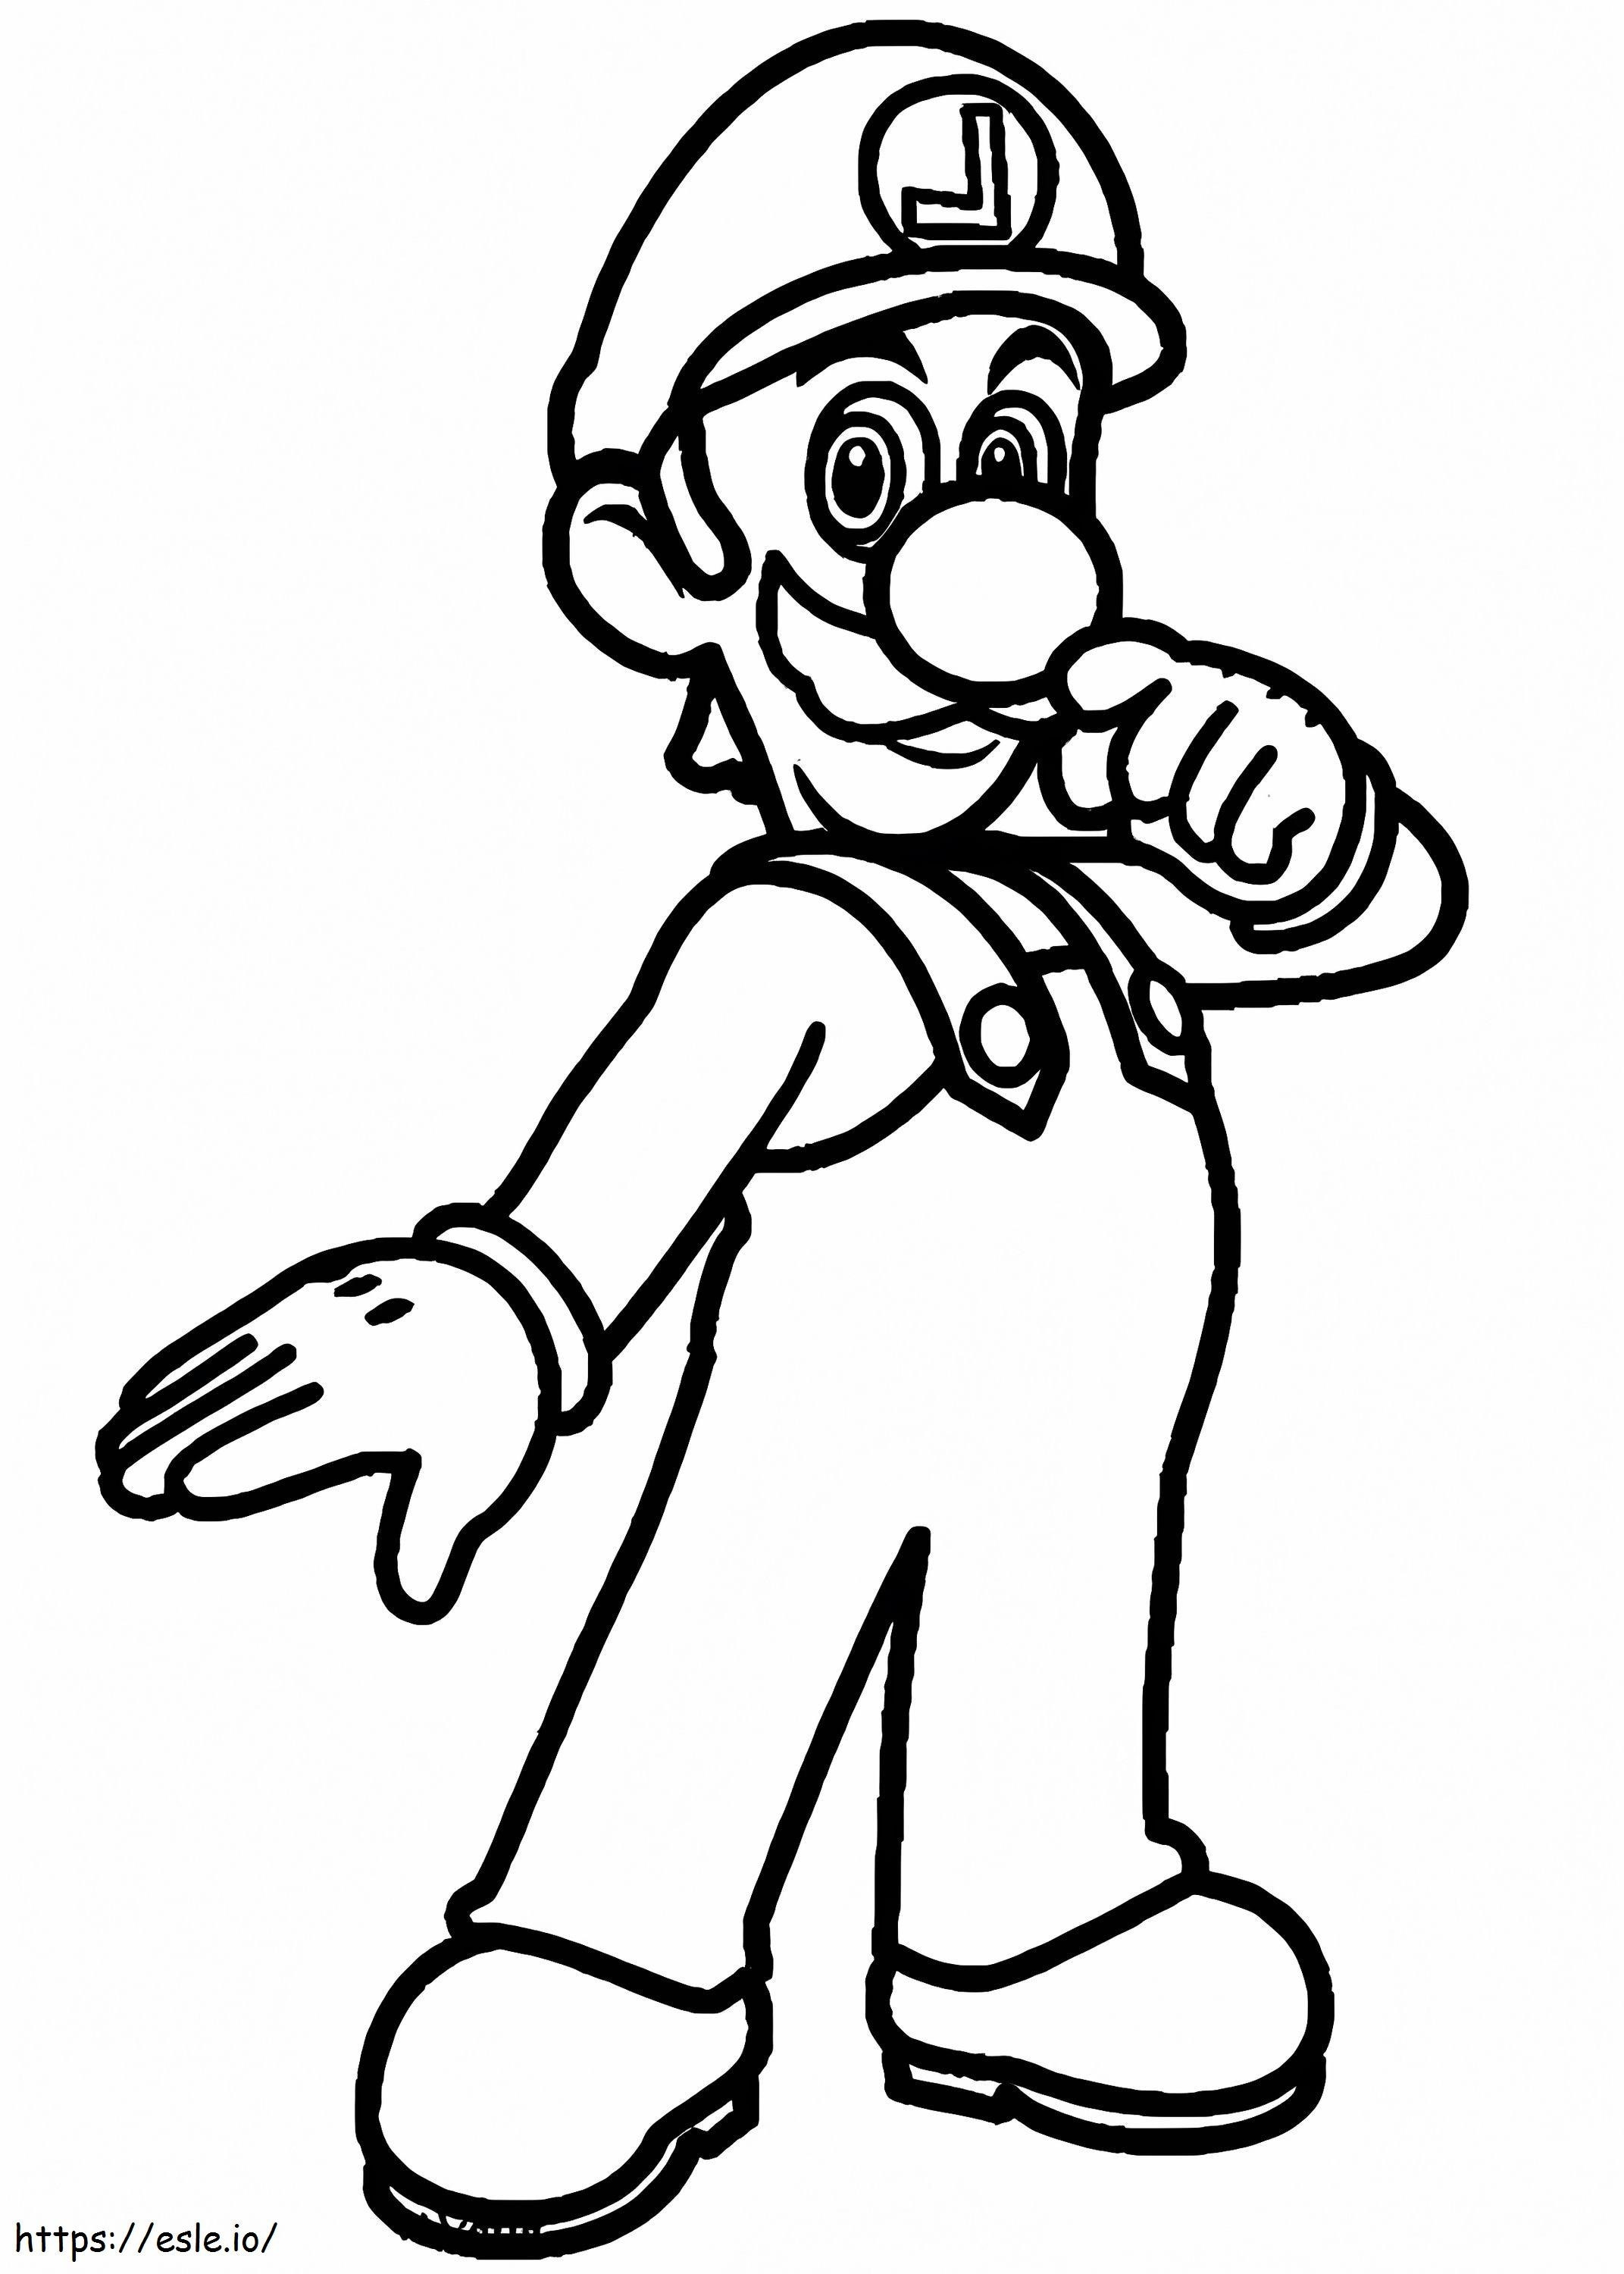 Luigi De Süper Mario 3 boyama